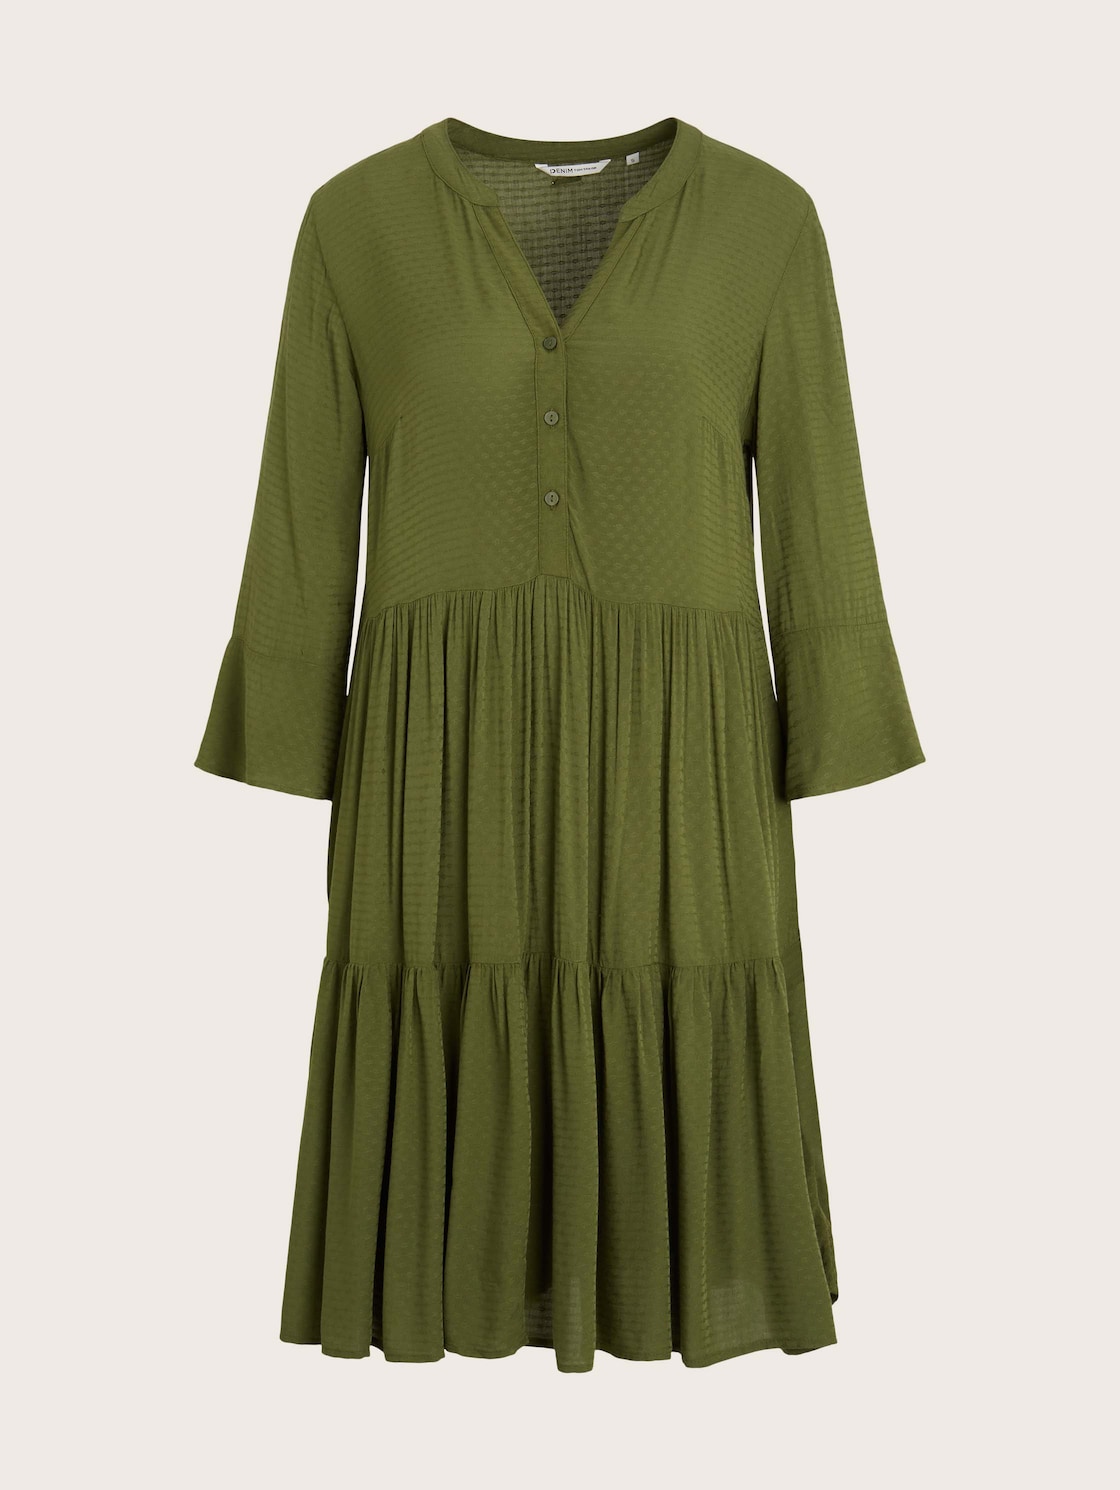 TOM TAILOR DENIM Damen Kleid mit Volants, grün, Gr. XS von Tom Tailor Denim